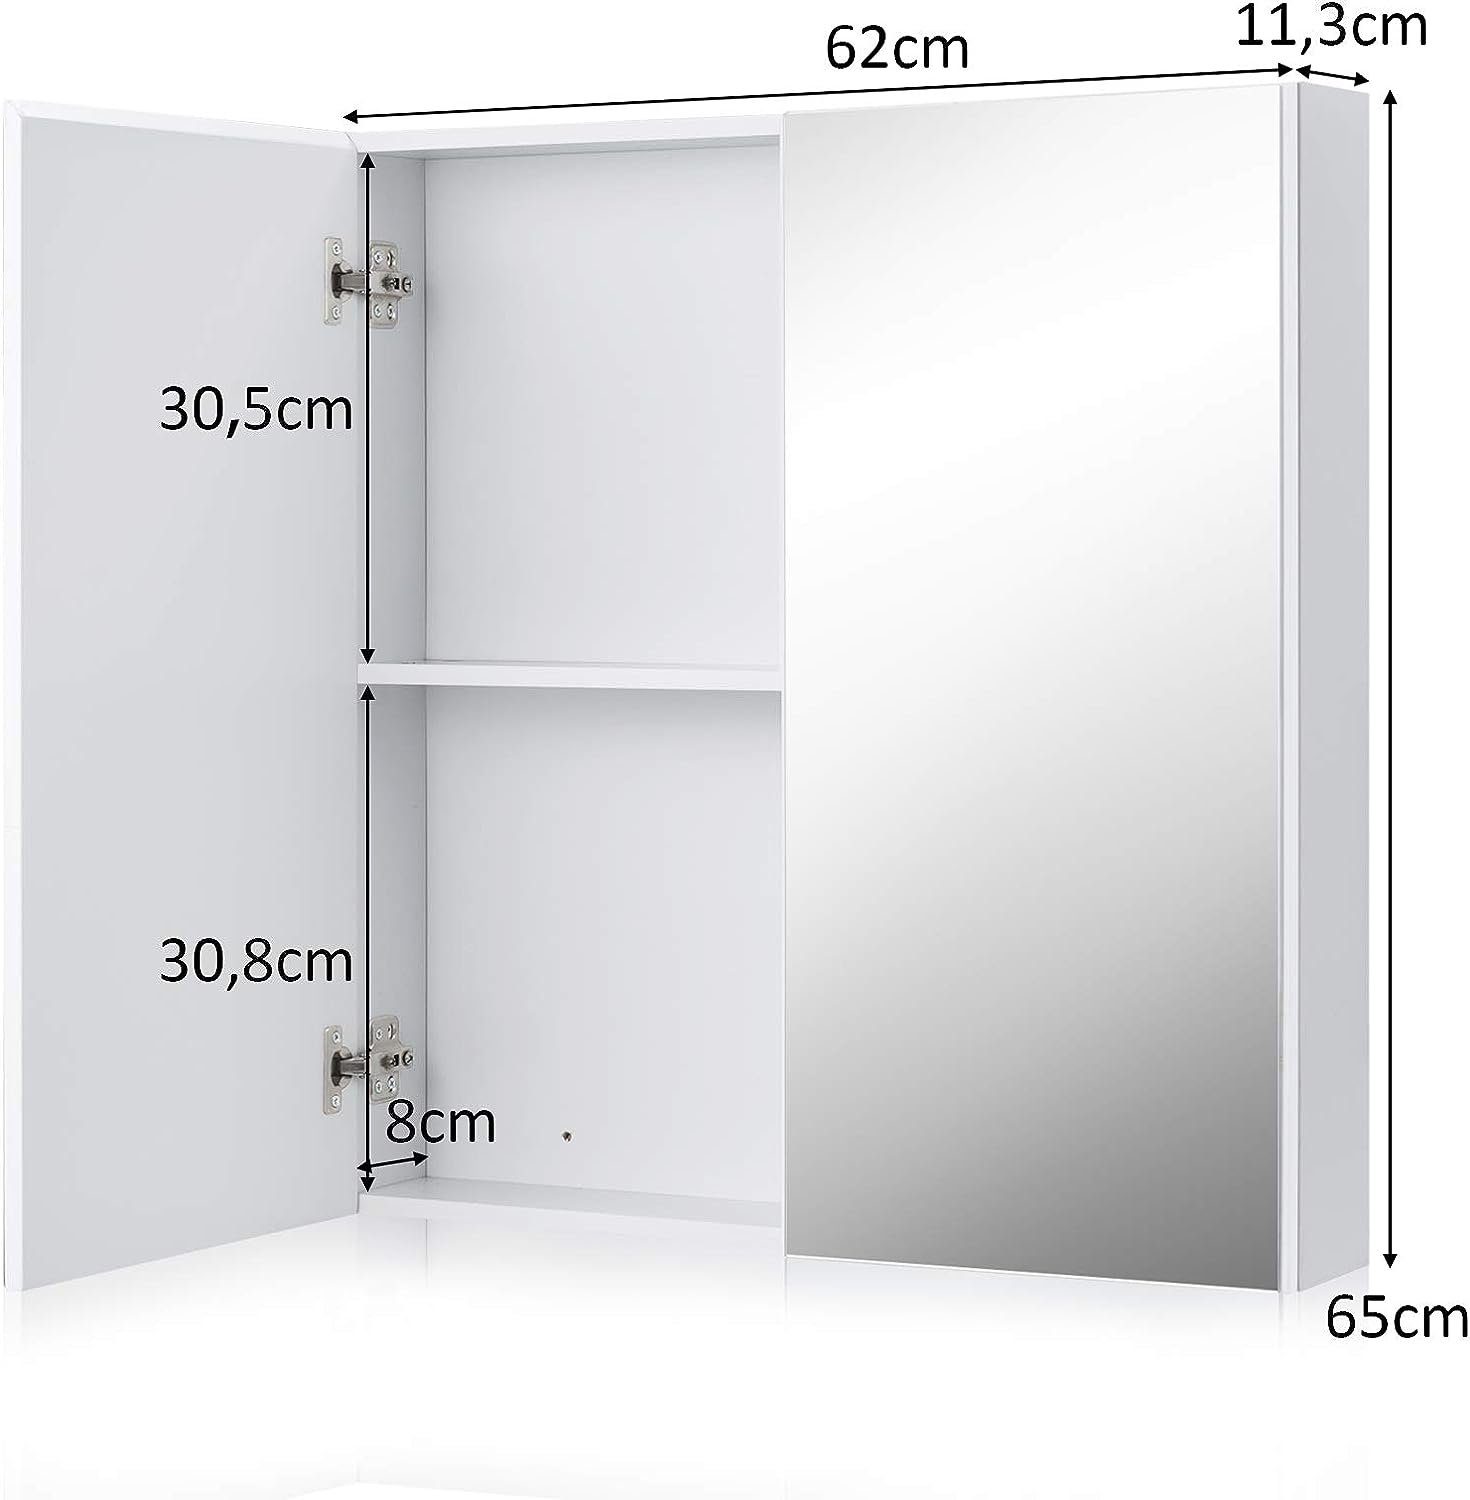 KOMFOTTEU x Badezimmerspiegelschrank Türen, Spiegelschrank x cm 65 11,3 62 mit 2